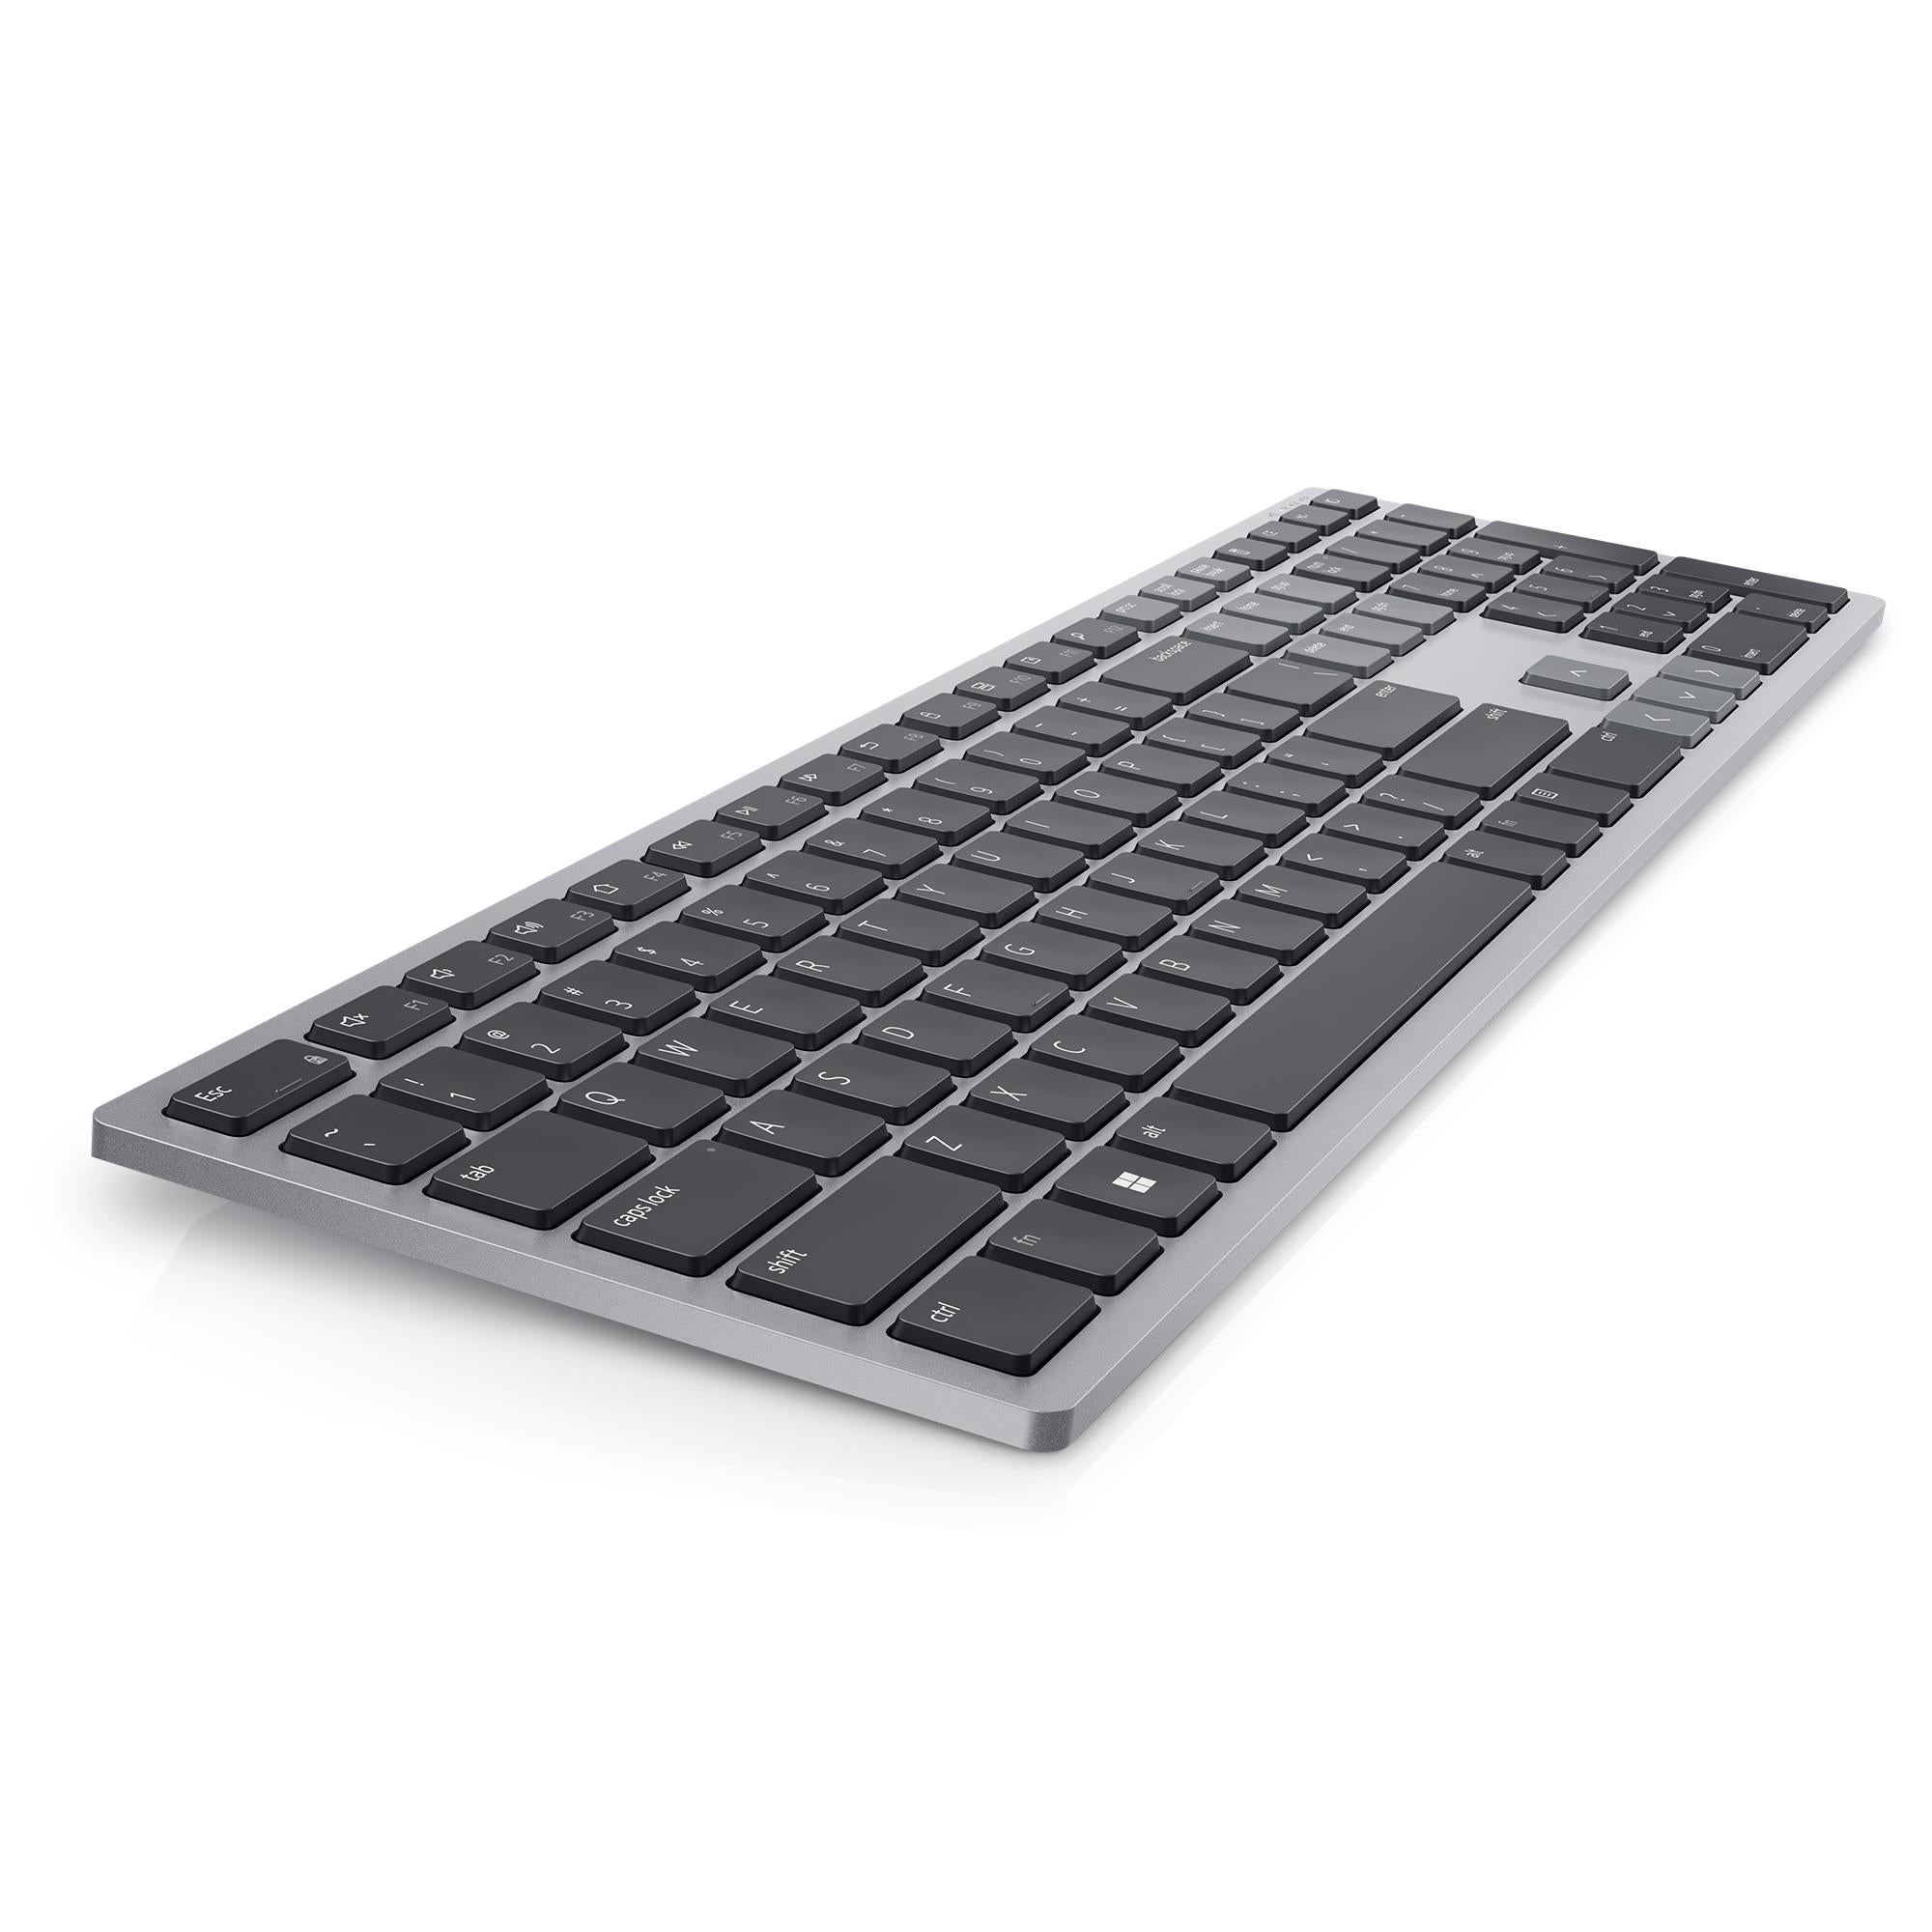 dell kb700 multi-device wireless keyboard (grey)